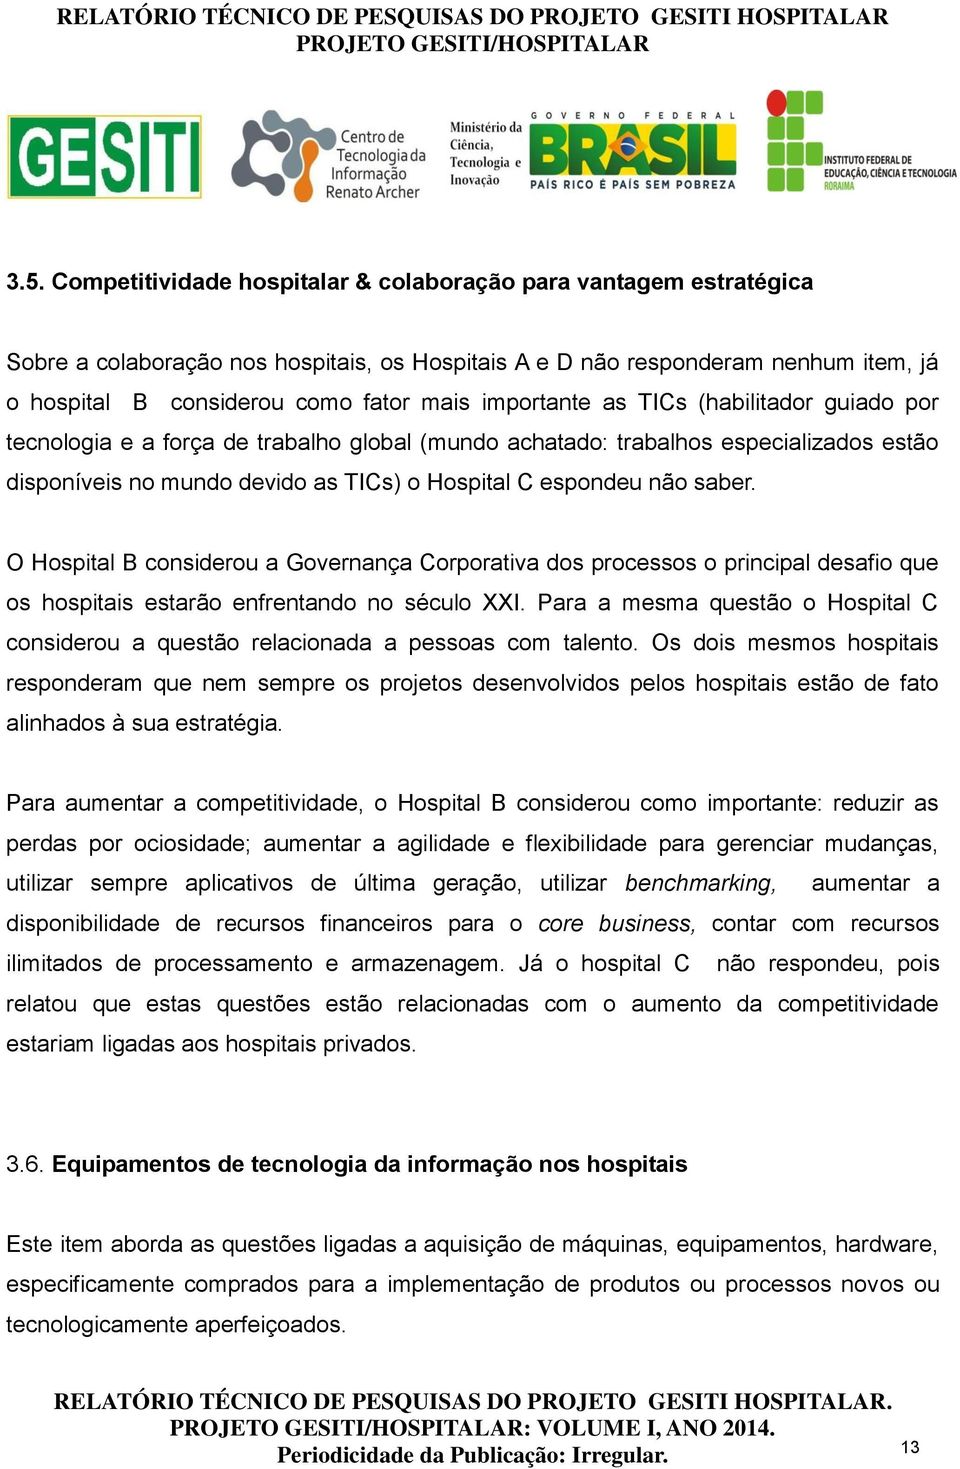 O Hospital B considerou a Governança Corporativa dos processos o principal desafio que os hospitais estarão enfrentando no século XXI.